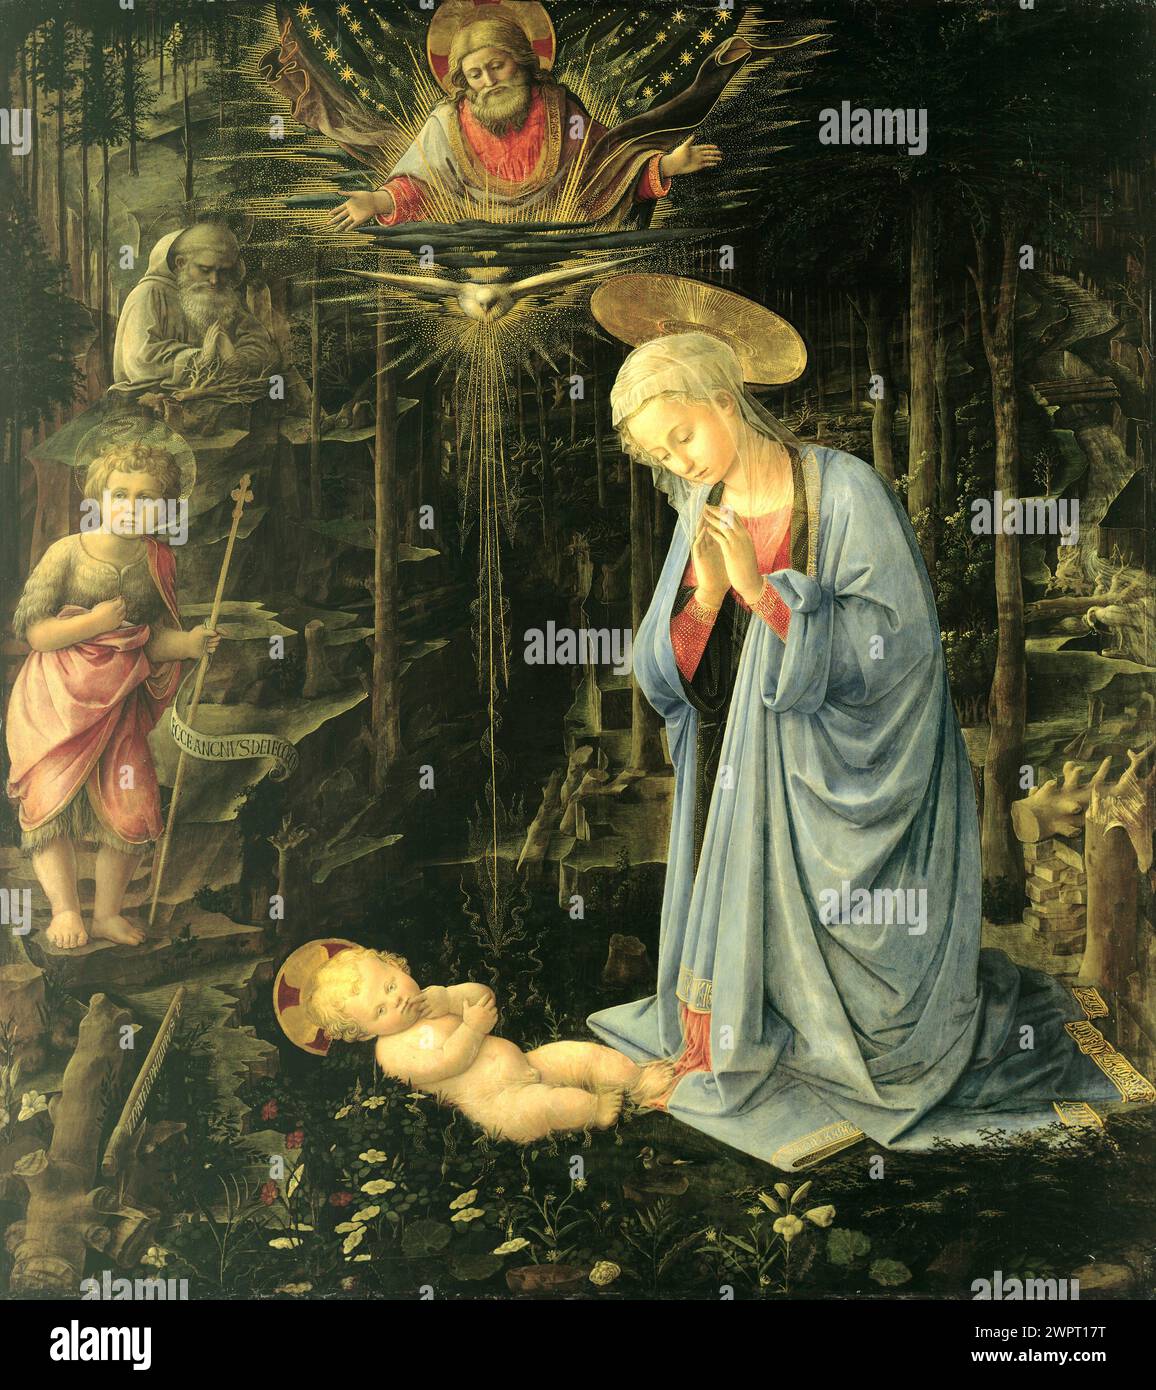 FRA Filippo Lippi, la Nativité mystique ou l'Adoration dans la forêt, vers 1459 Banque D'Images